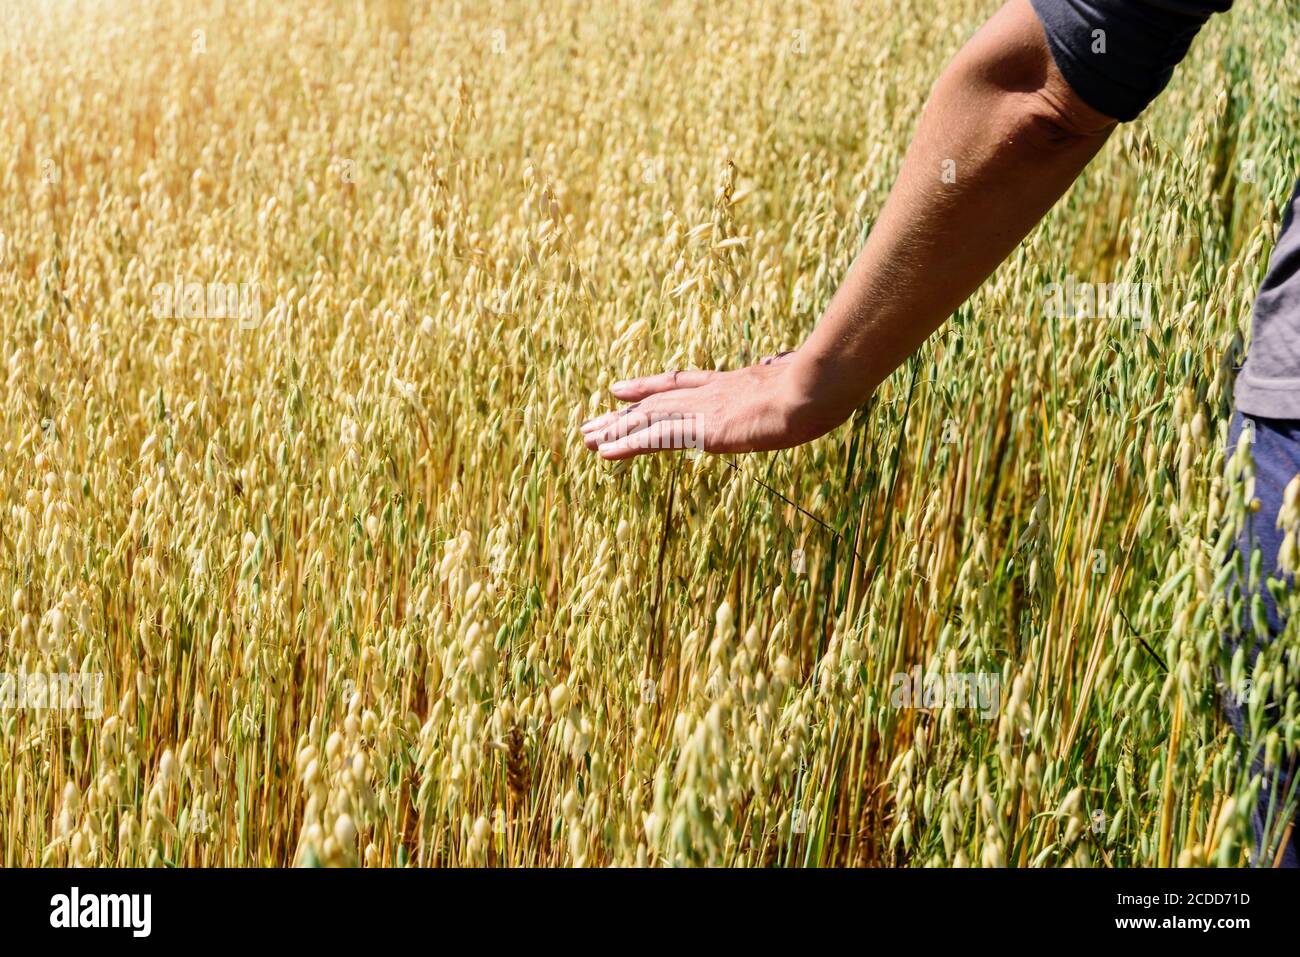 Die Hand des Bauern berührt die Ohren des Roggenoats. Grüne Ähren mit Körnern von Getreide Roggen Weizen Hafer Stockfoto